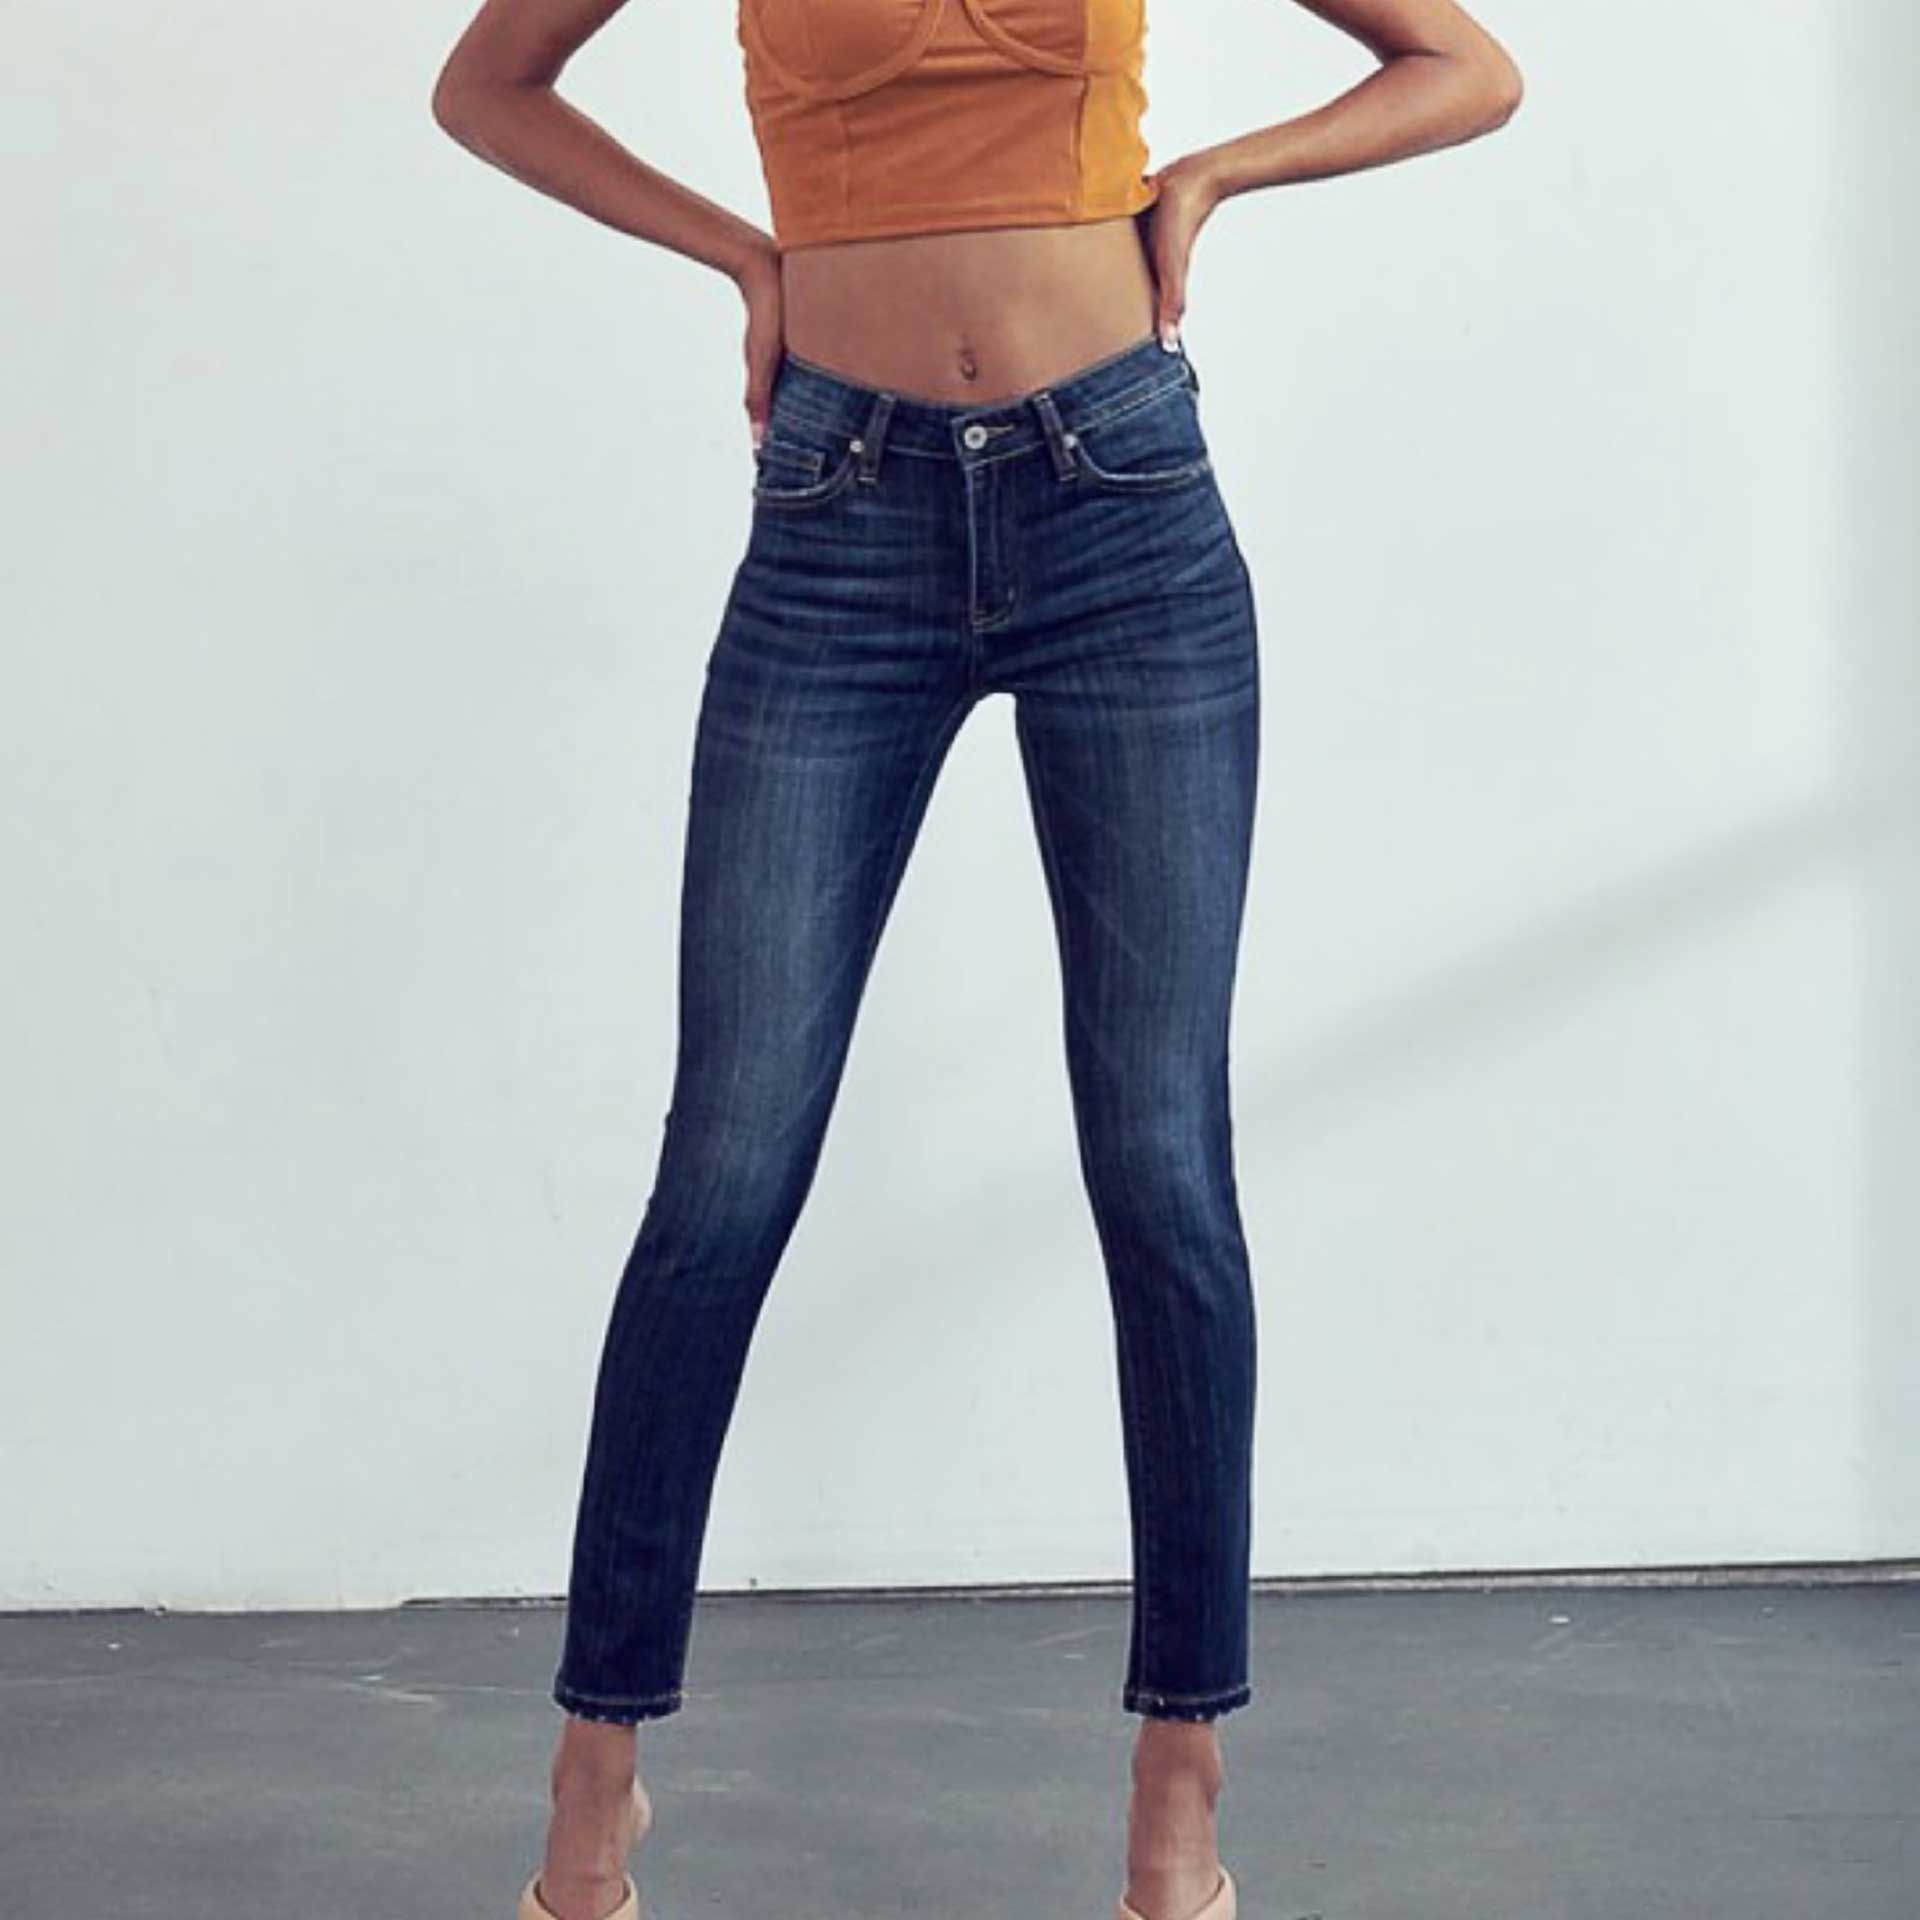 Lennox Skinny Jeans